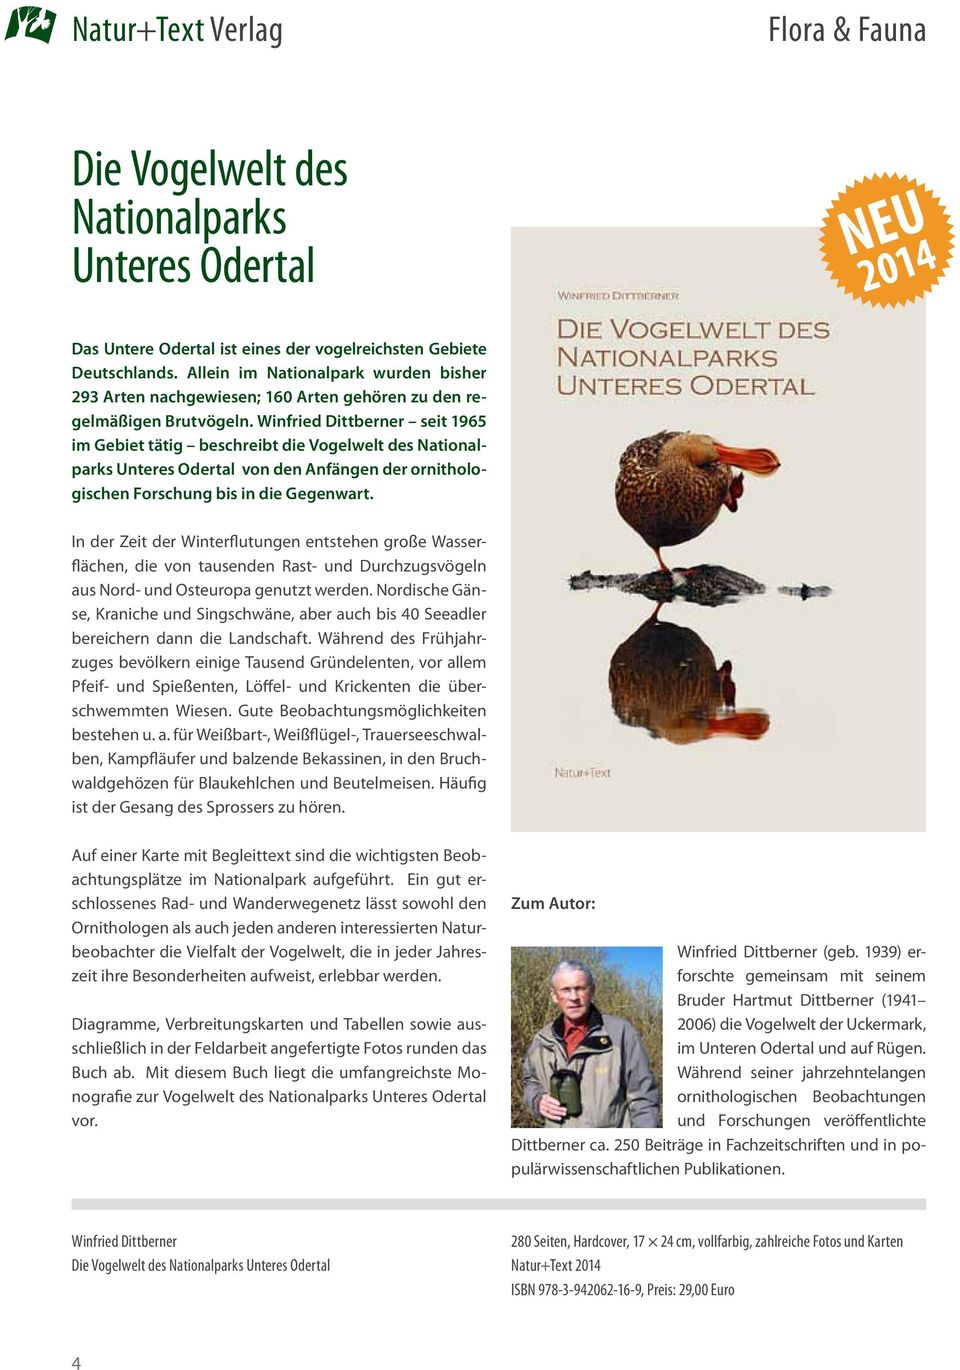 Winfried Dittberner seit 1965 im Gebiet tätig beschreibt die Vogelwelt des Nationalparks Unteres Odertal von den Anfängen der ornithologischen Forschung bis in die Gegenwart.